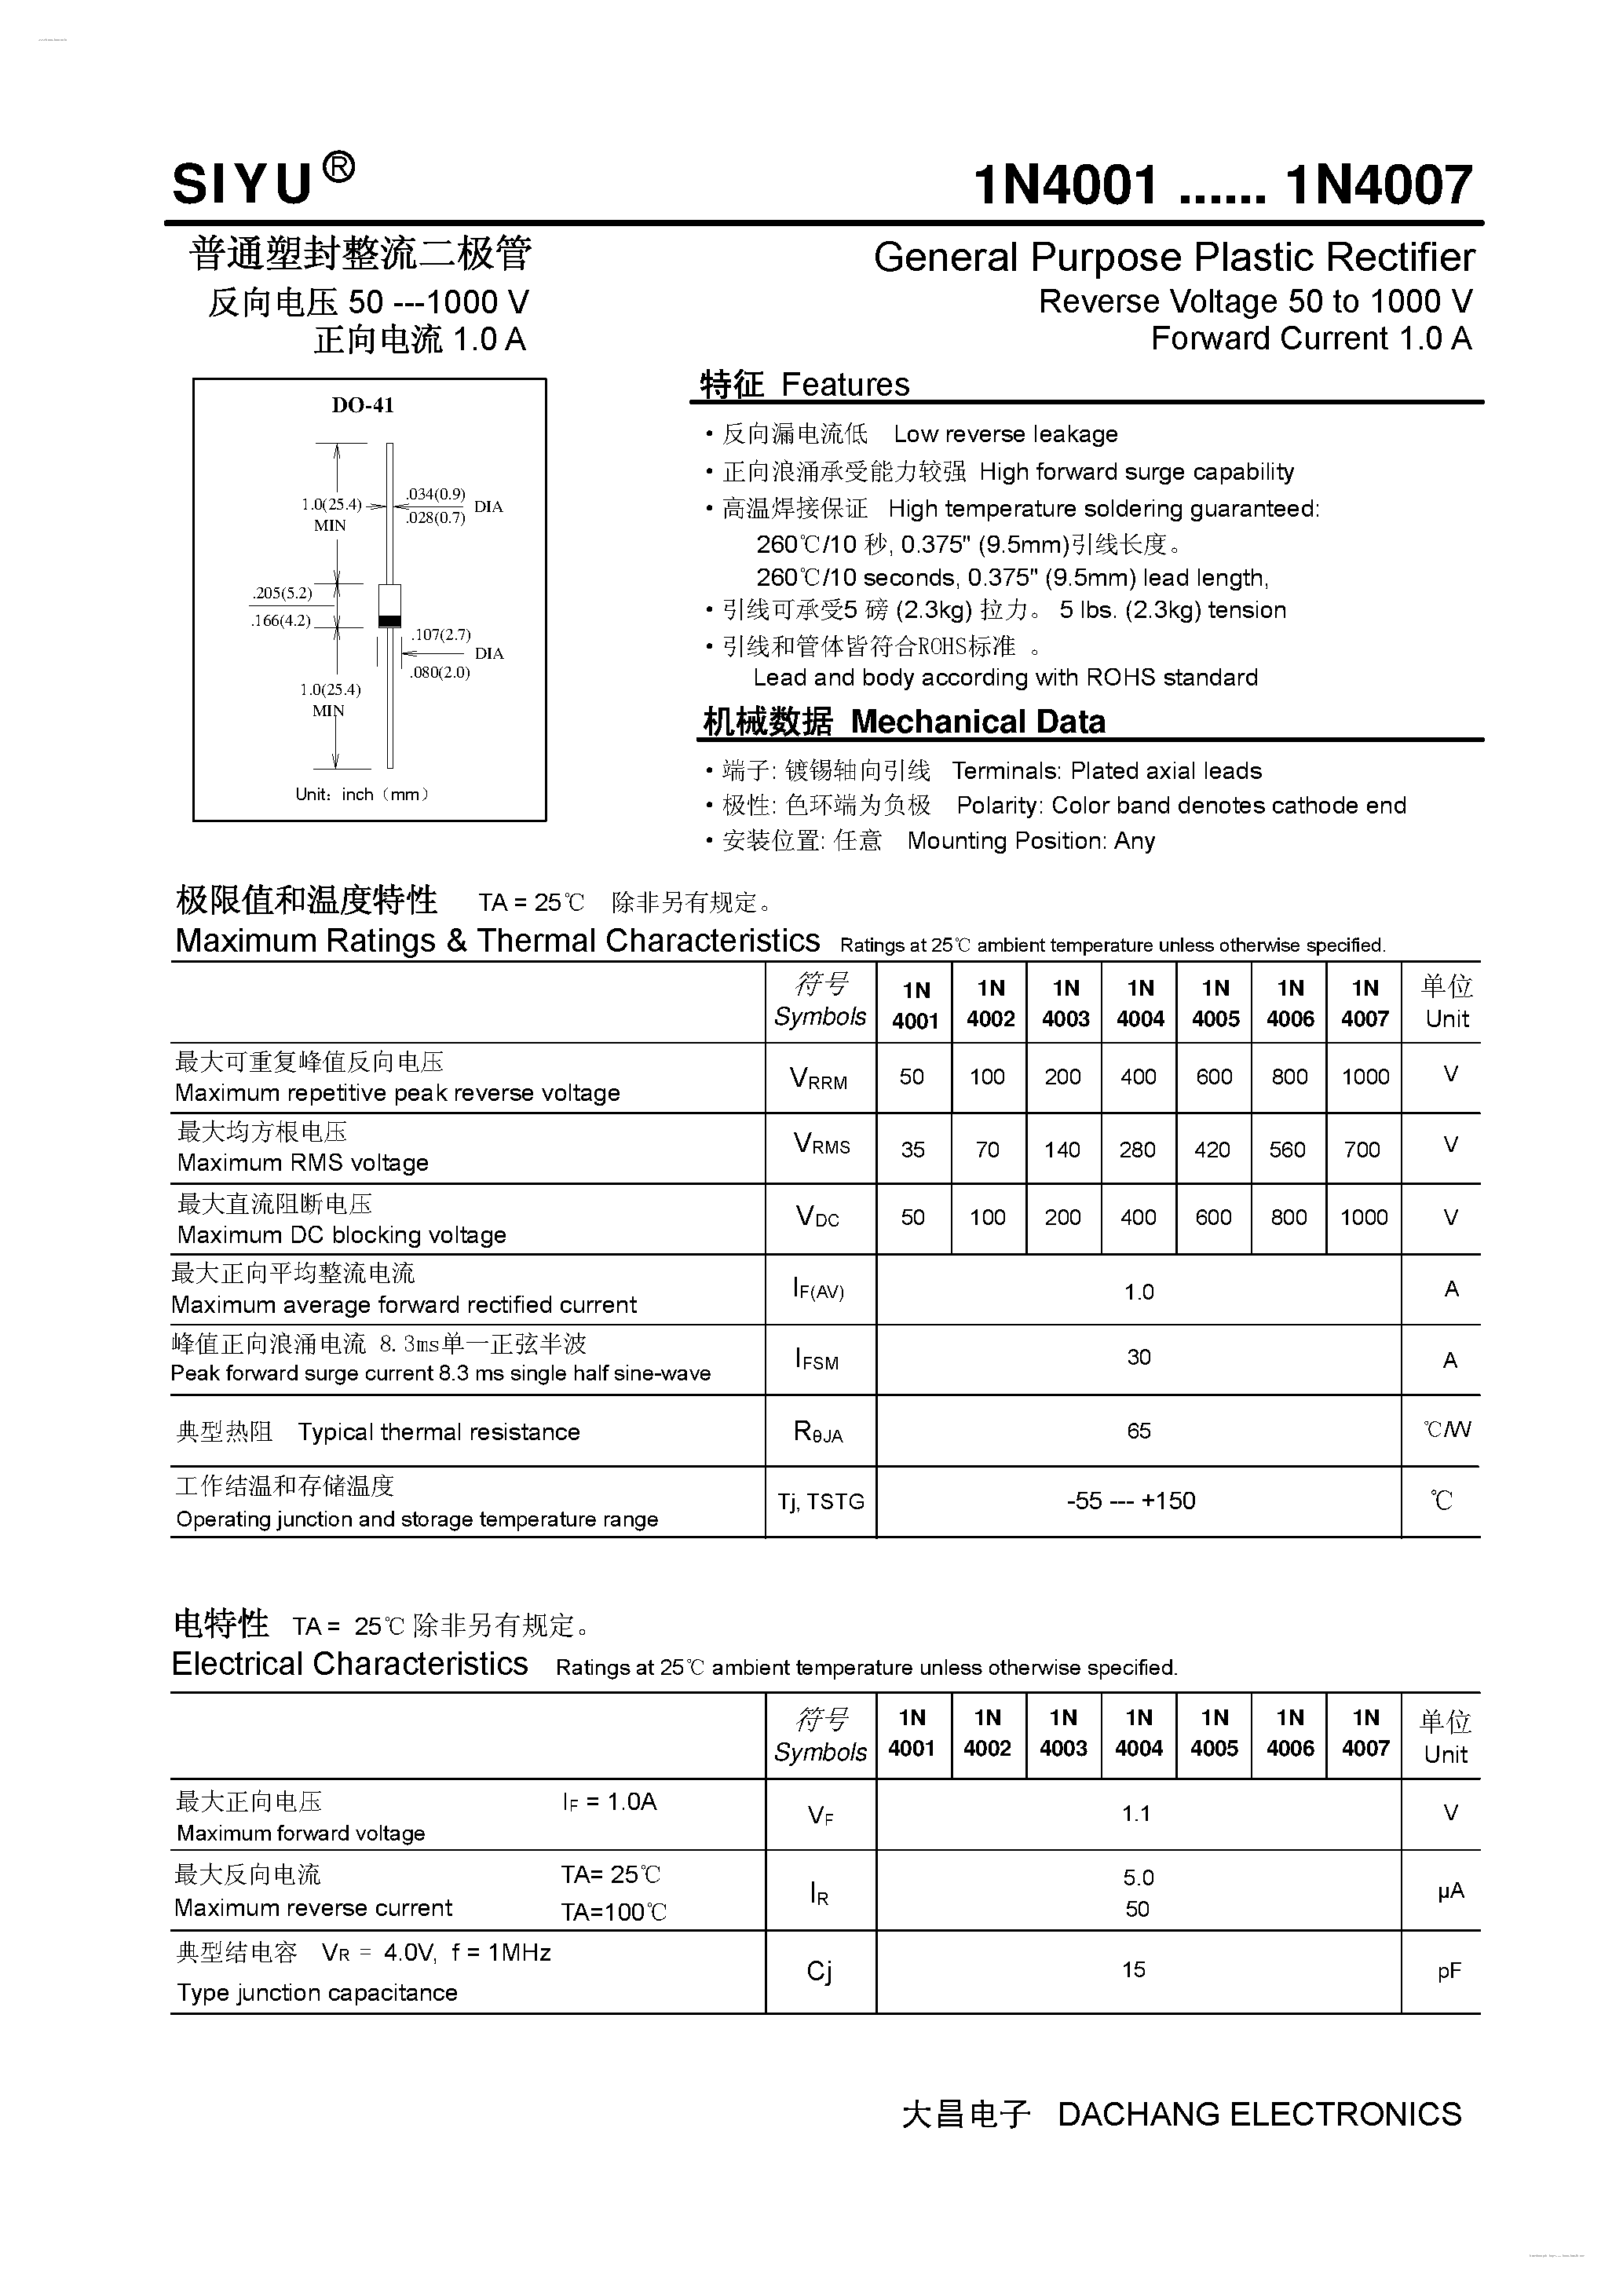 Datasheet 1N4001 - (1N4001 - 1N4007) General Purpose Plastic Rectifier page 1